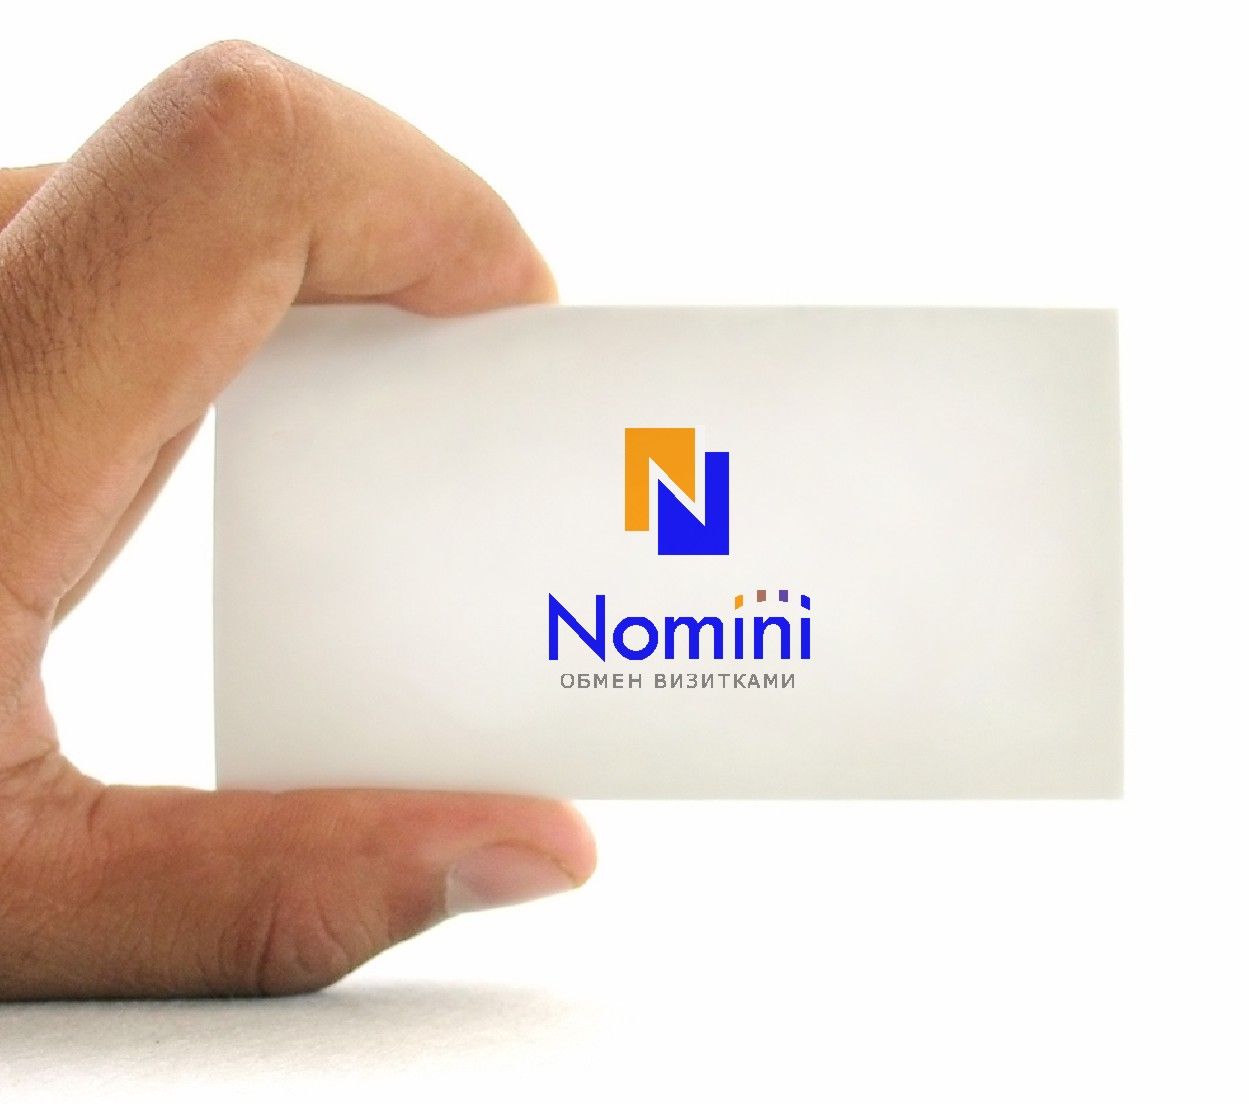 Логотип и иконка для iOS-приложения Nomini - дизайнер radchuk-ruslan